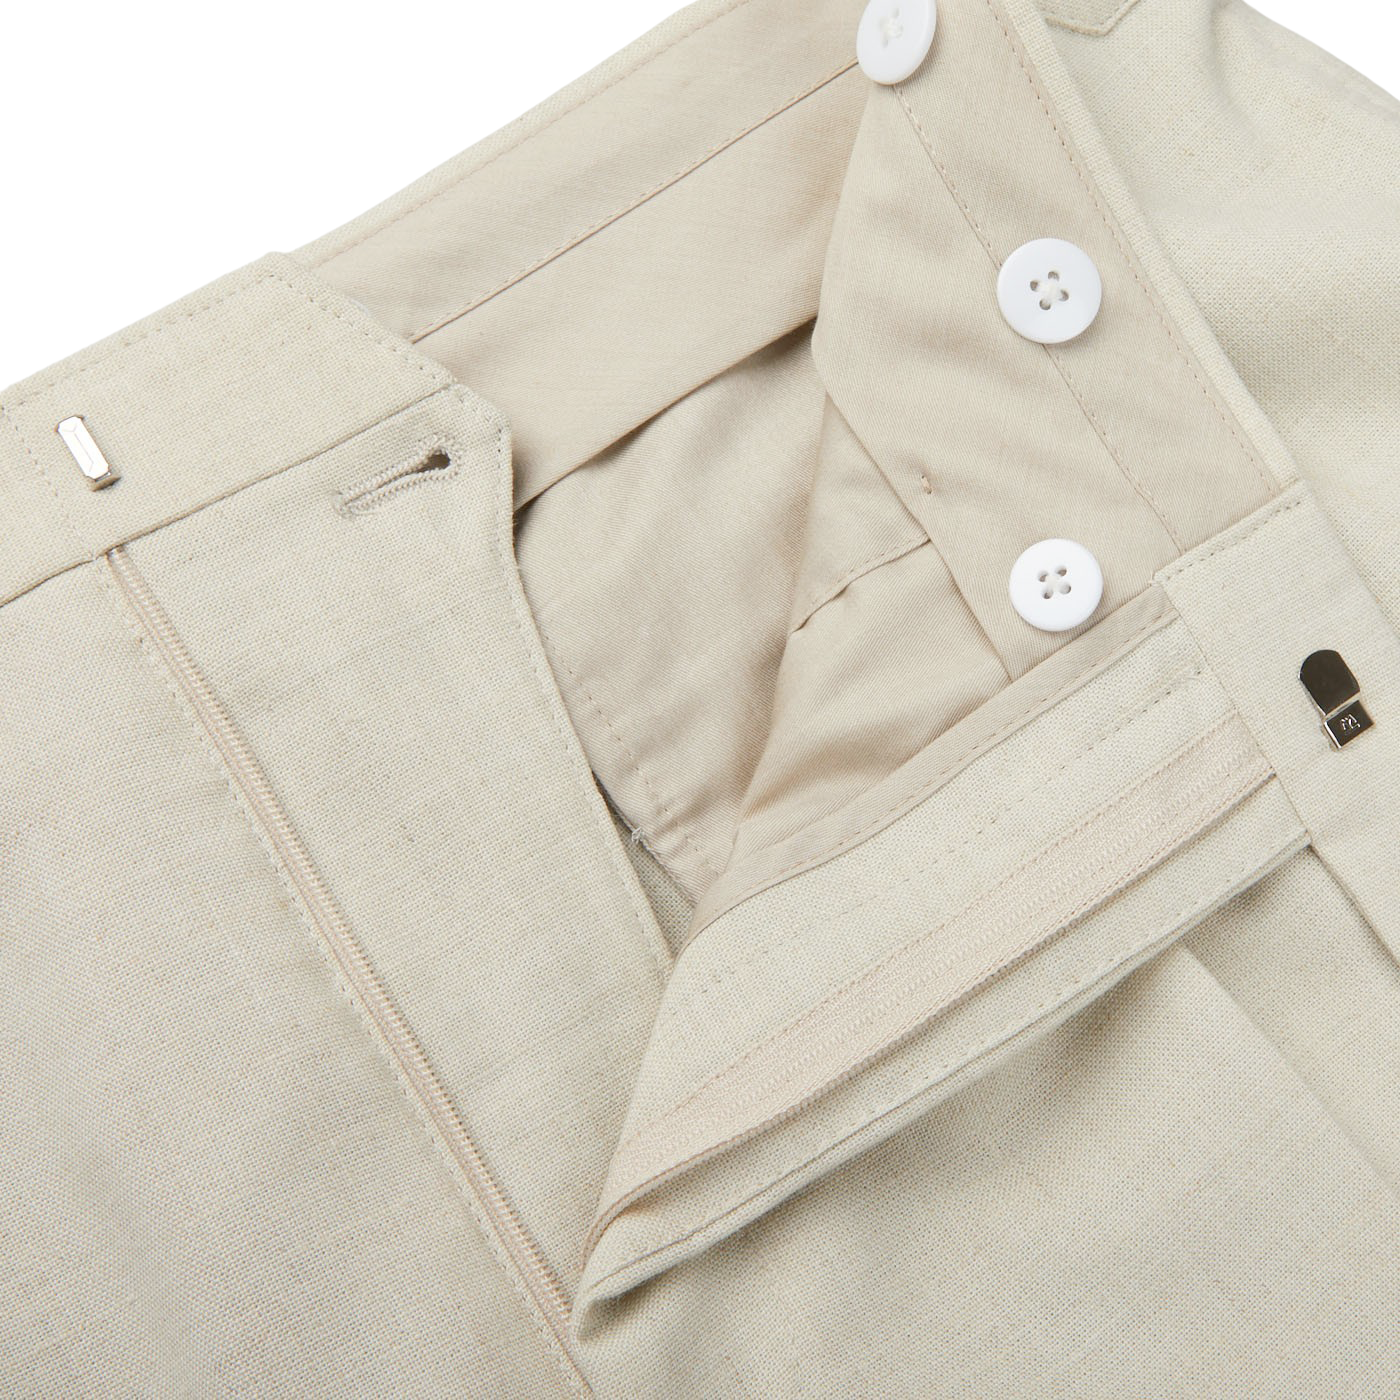 Baltzar Sartorial Light Beige Wool Linen Pleated Trousers Zipper1